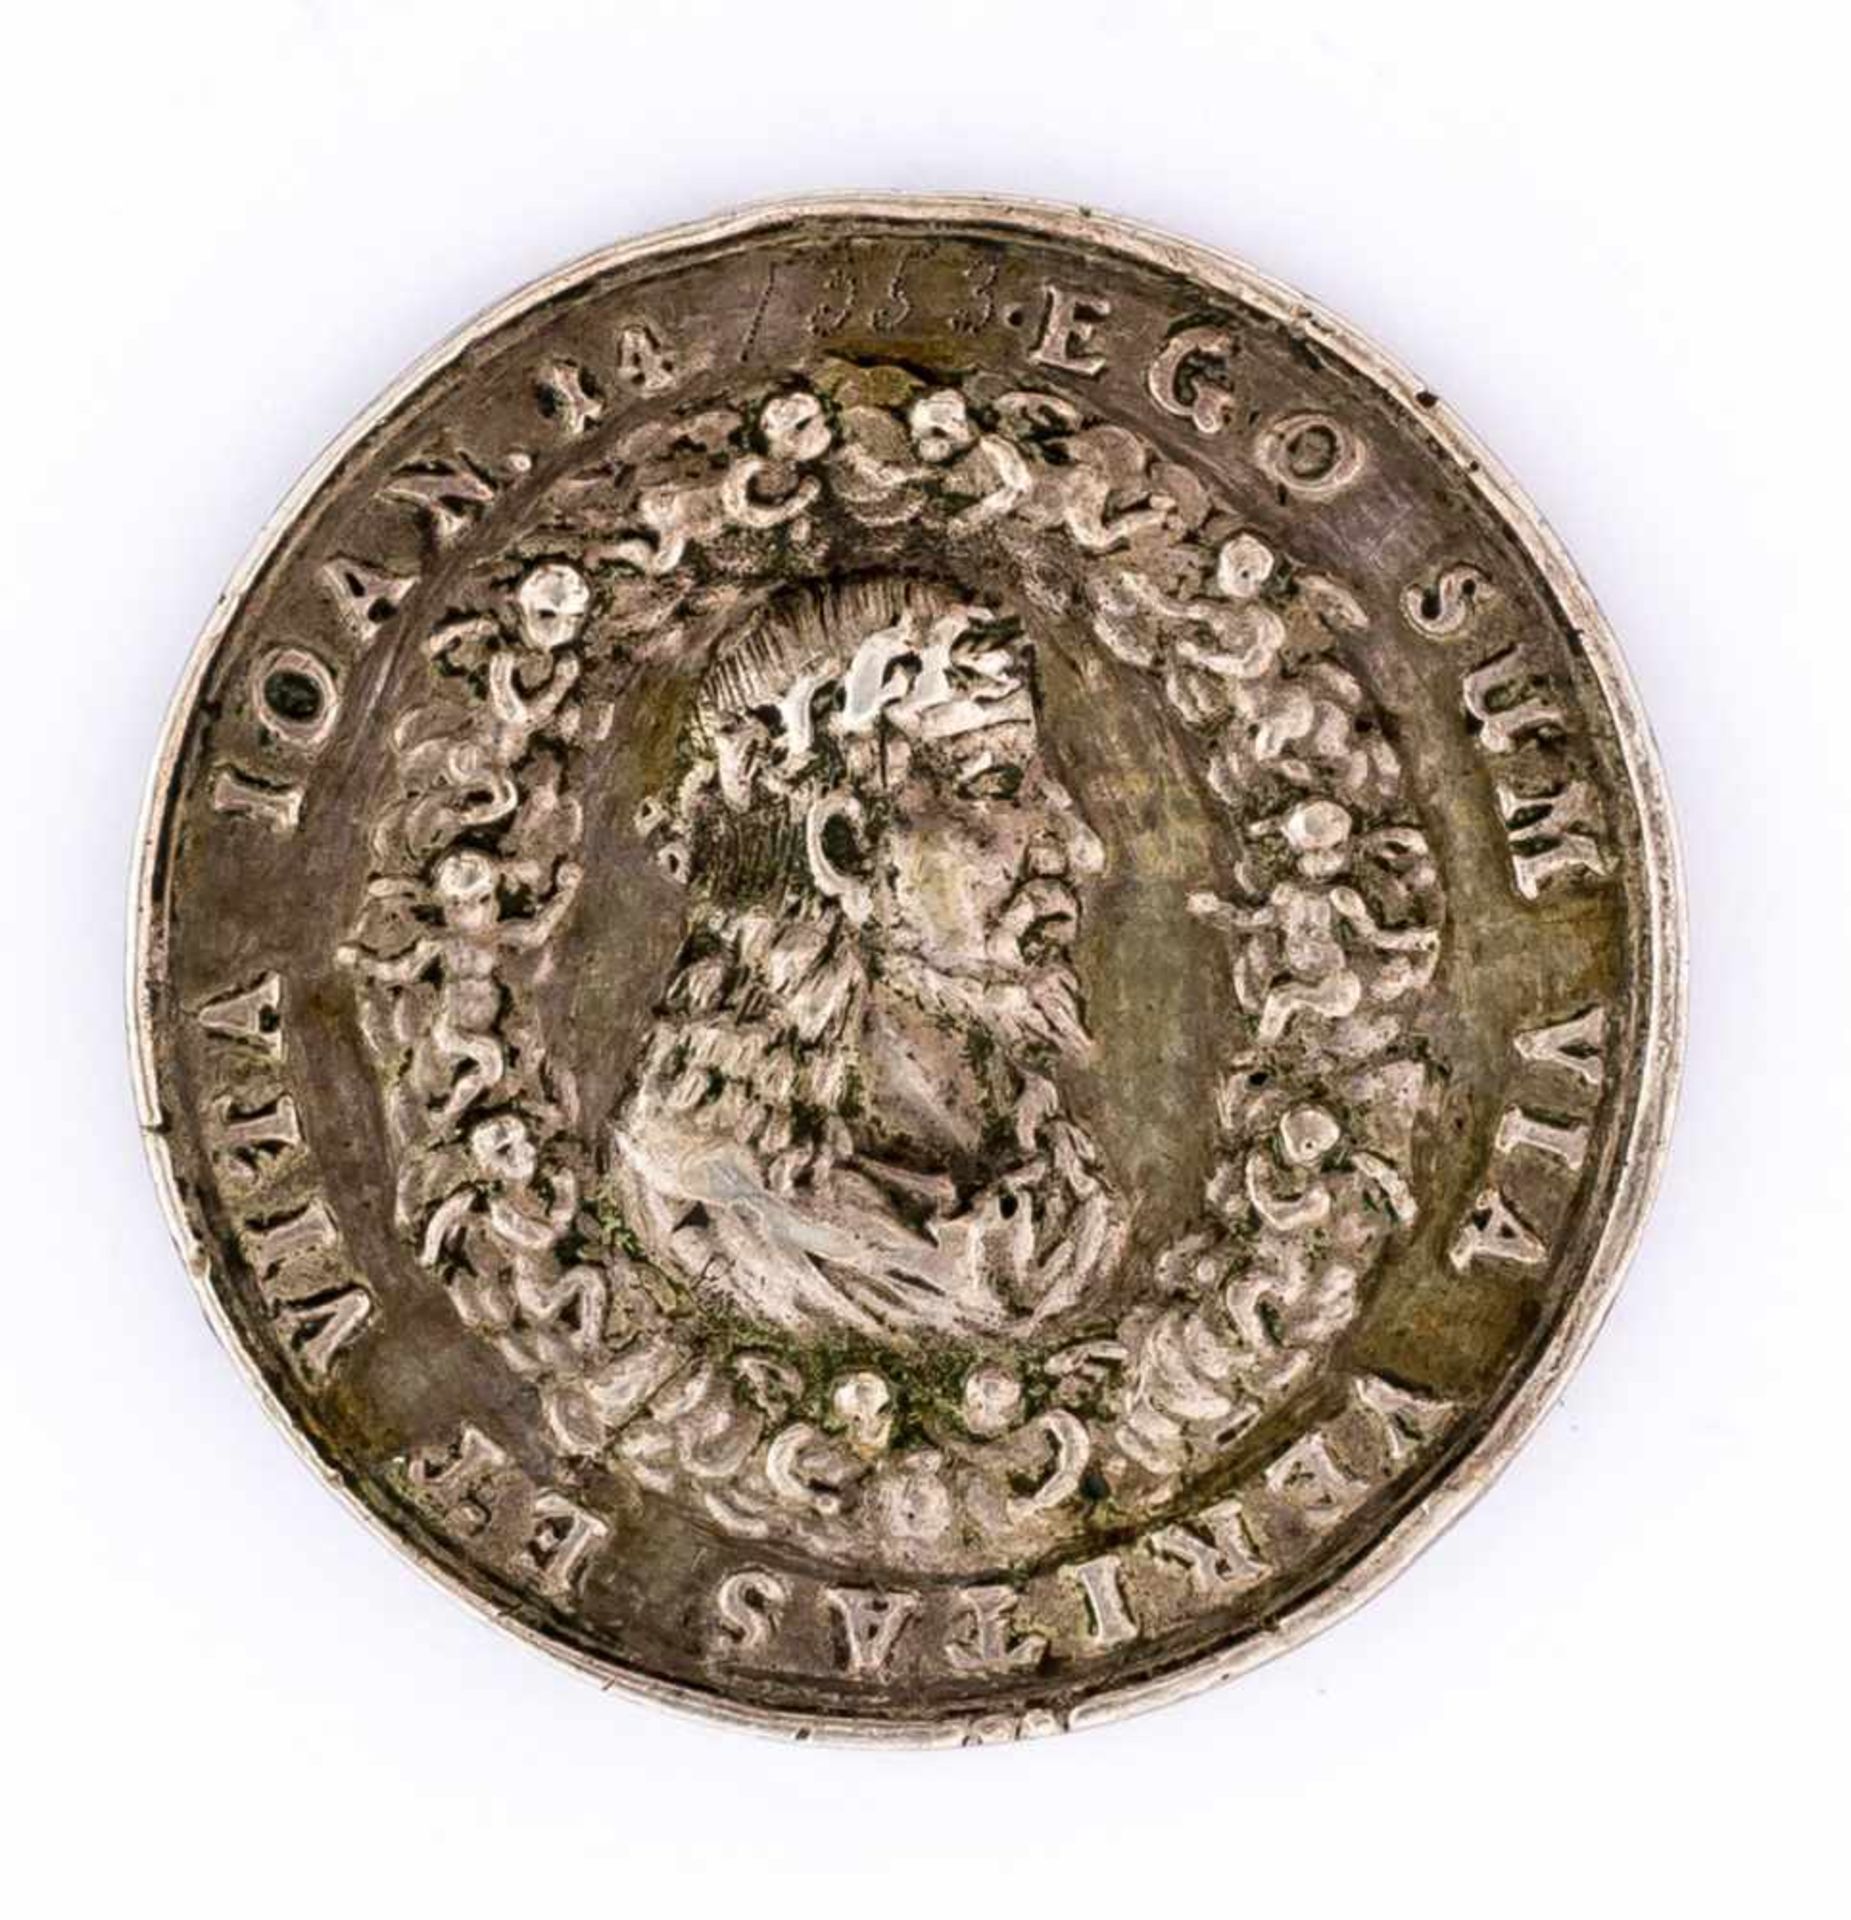 Passions-Christus Medaille, Silber (?), wohl 17. Jh. Durchmesser 5 cm Vorderseite: Dornengekrönte